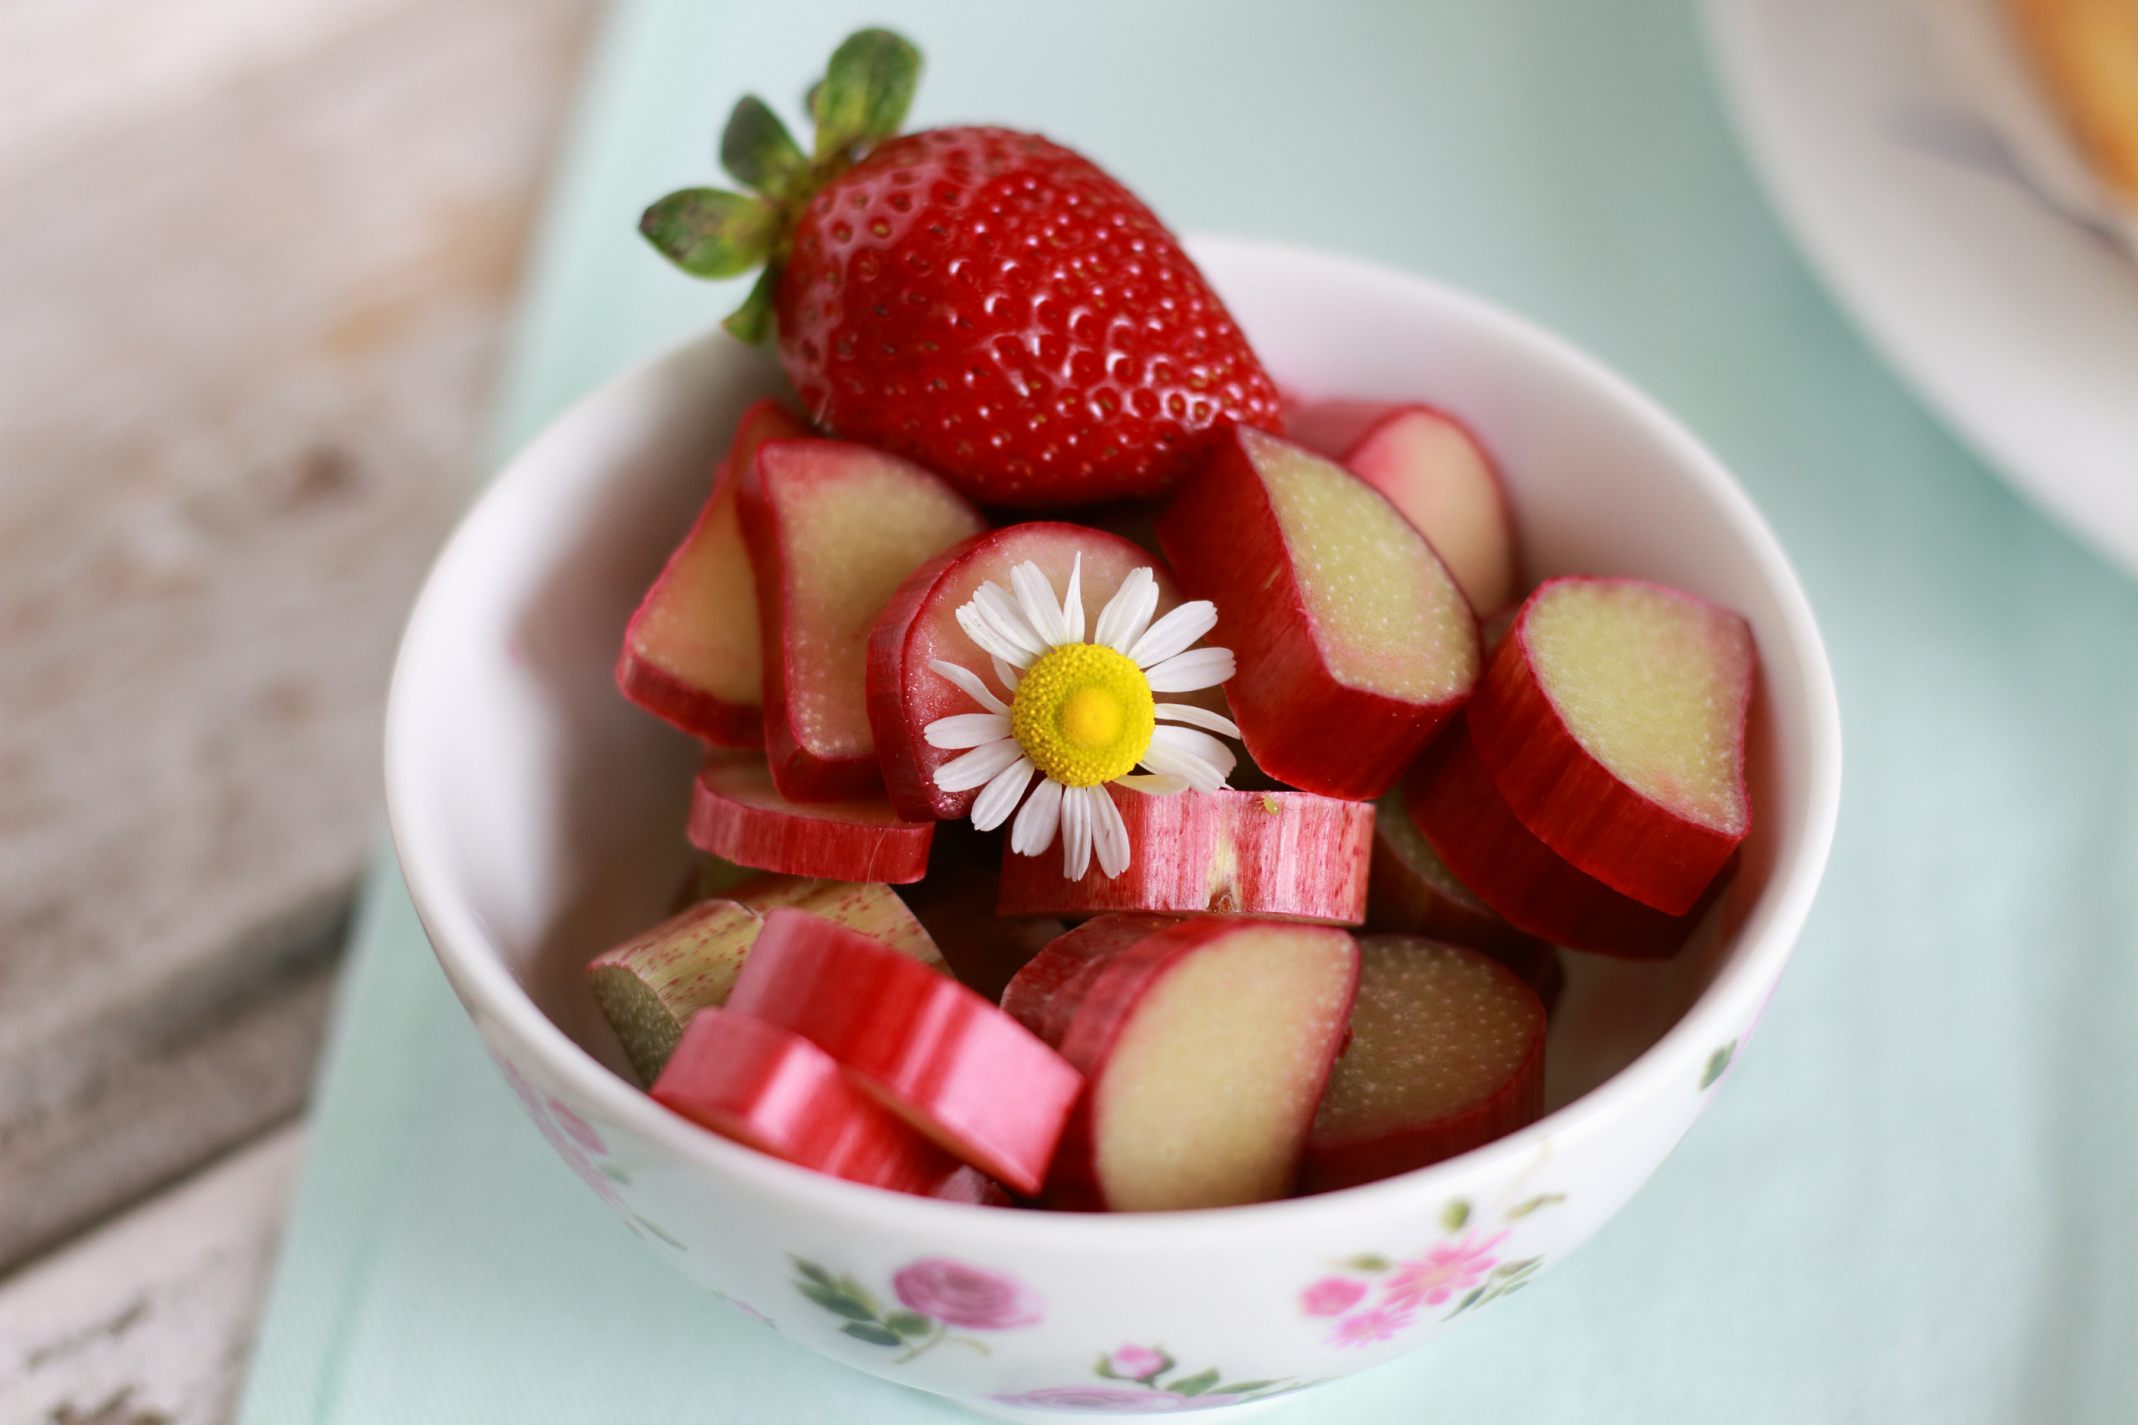 Rhabarber-Erdbeer-Streuselkuchen mit Pudding | Gaumen Markt Blog